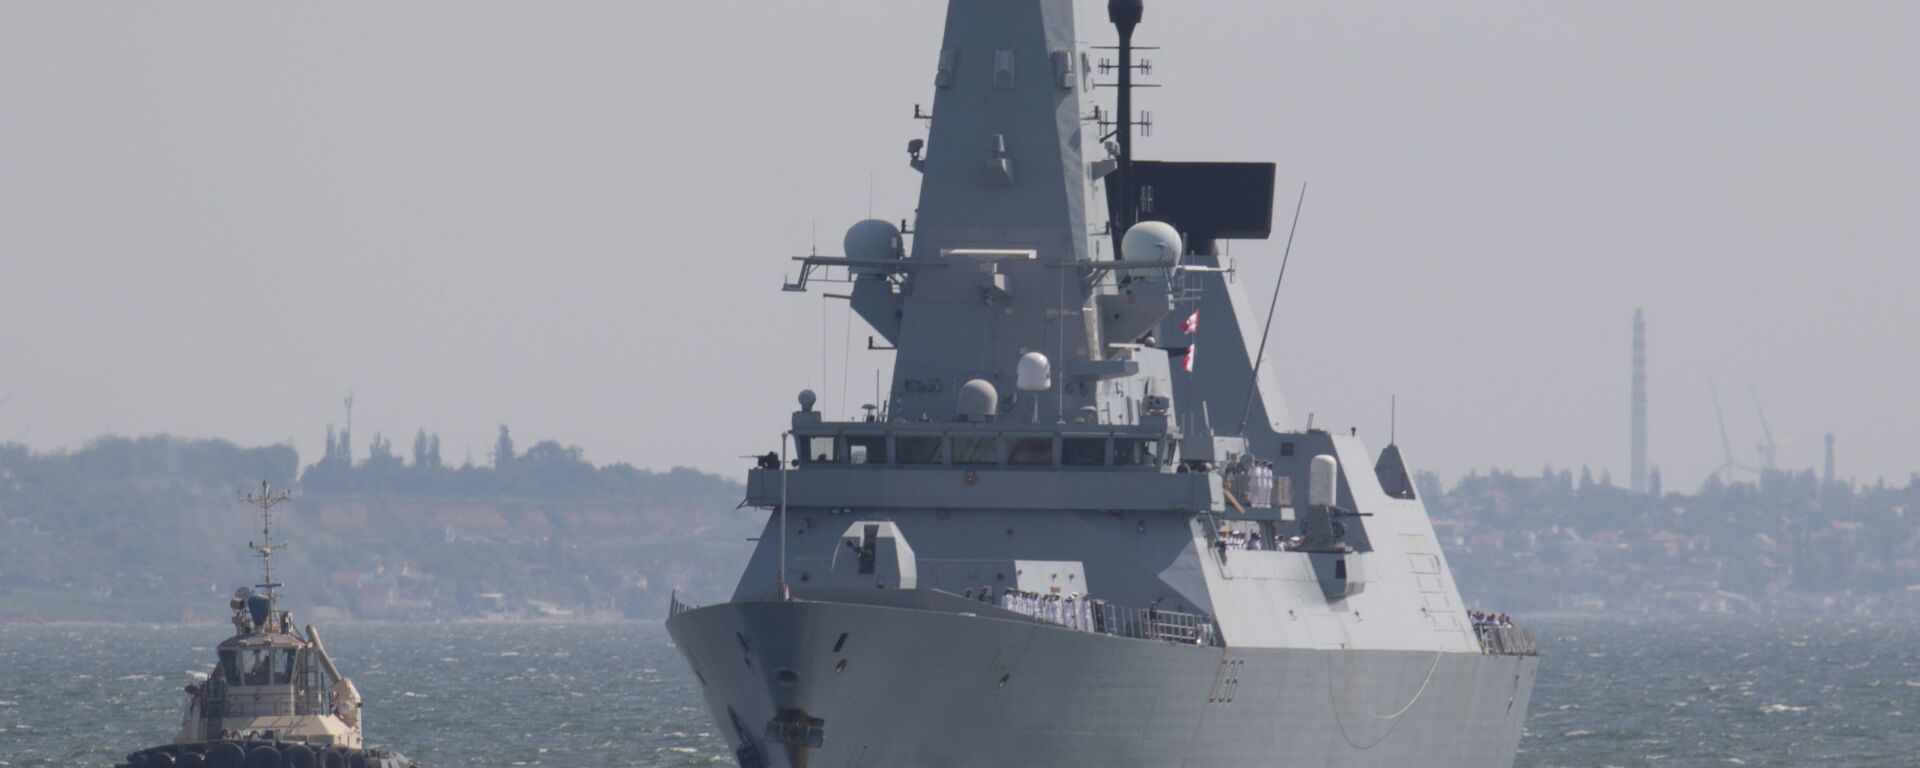 Эсминец Тип 45 британских ВМС HMS Defender прибыл в черноморский порт Одесса, Украина, 18 июня 2021 года. Фотография сделана 18 июня 2021 года. REUTERS / Сергей Смоленцев - Sputnik Абхазия, 1920, 07.07.2021